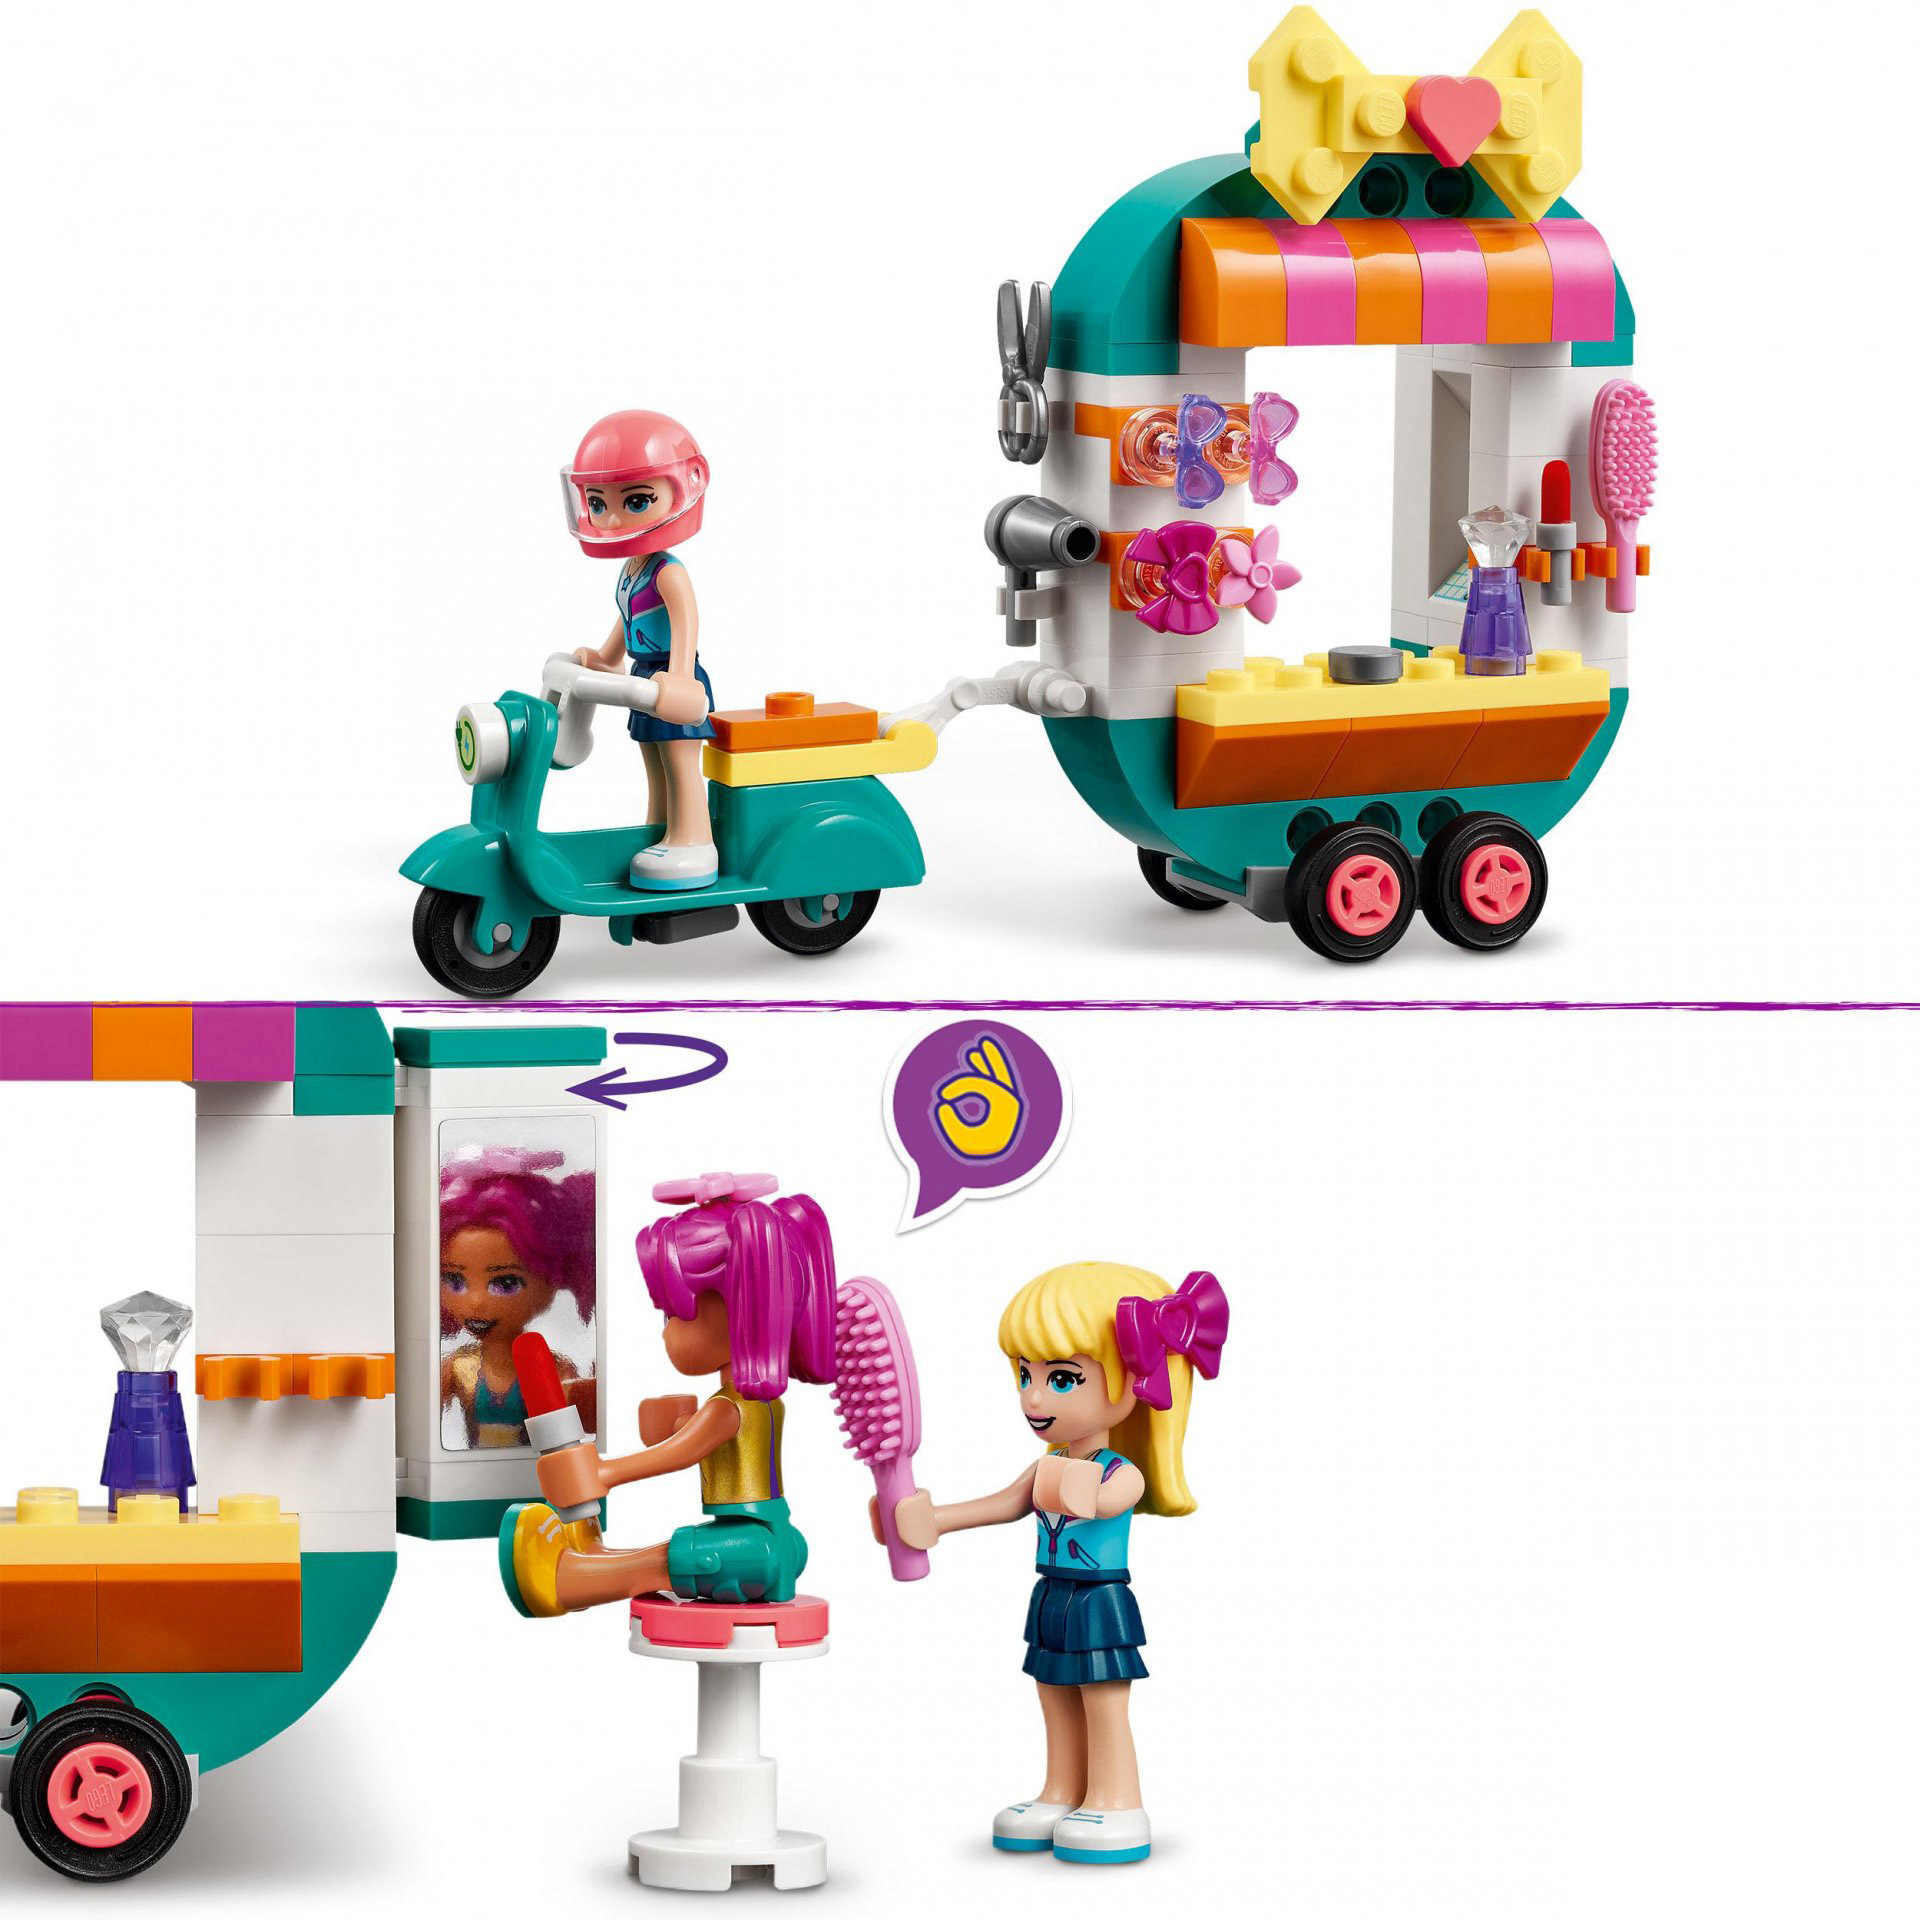 LEGO Friends Boutique di Moda Mobile, con Motorino Elettrico, Parrucchiere e Acc 41719, , large